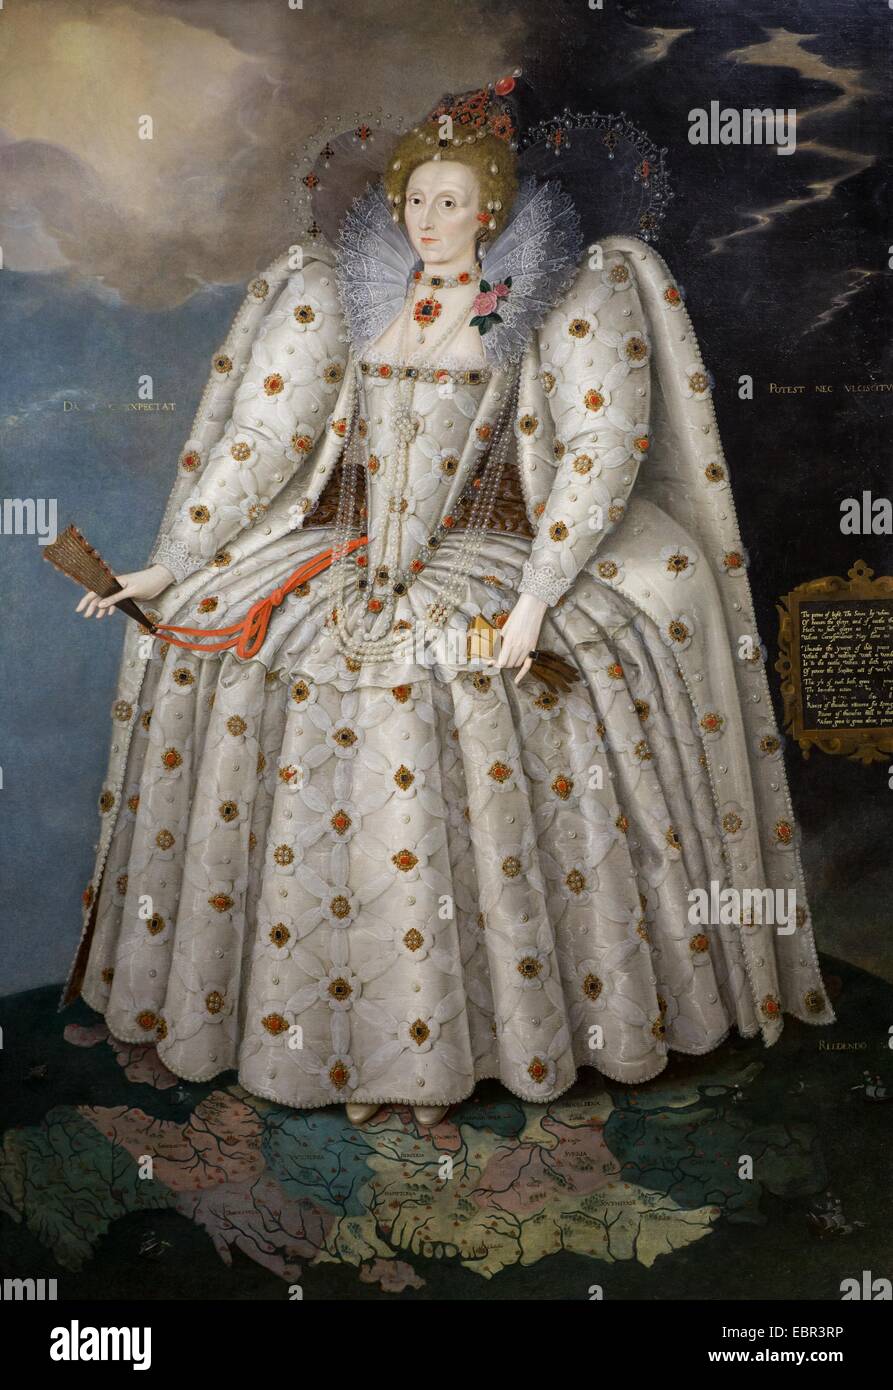 ActiveMuseum 0003637.jpg / Queen Elizabeth i., 1592, bekannt als die "Ditchley Portrait" - Marcus Gheeraerts der jüngere Öl auf Leinwand 22.01.2014 - / 16. Jahrhundert Sammlung / aktive Museum Stockfoto